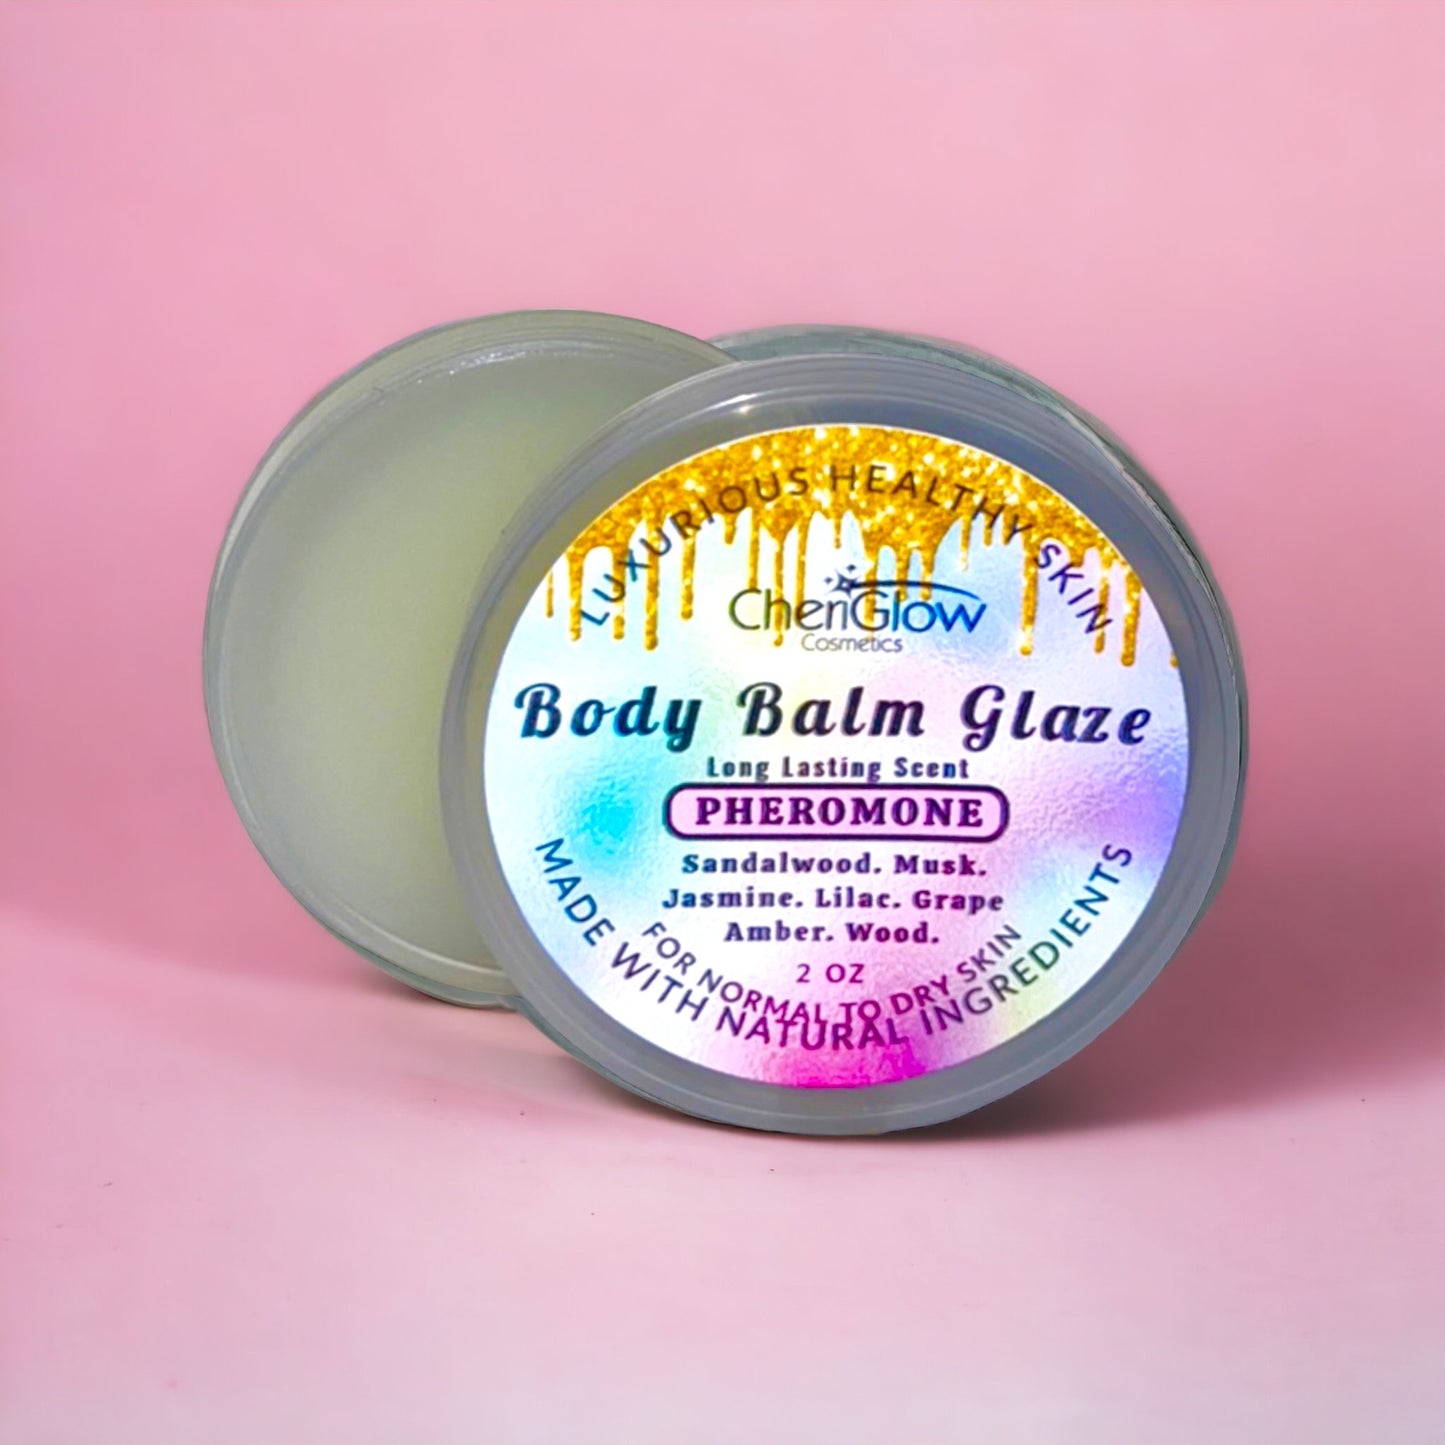 Body Balm Glaze - Pheromone